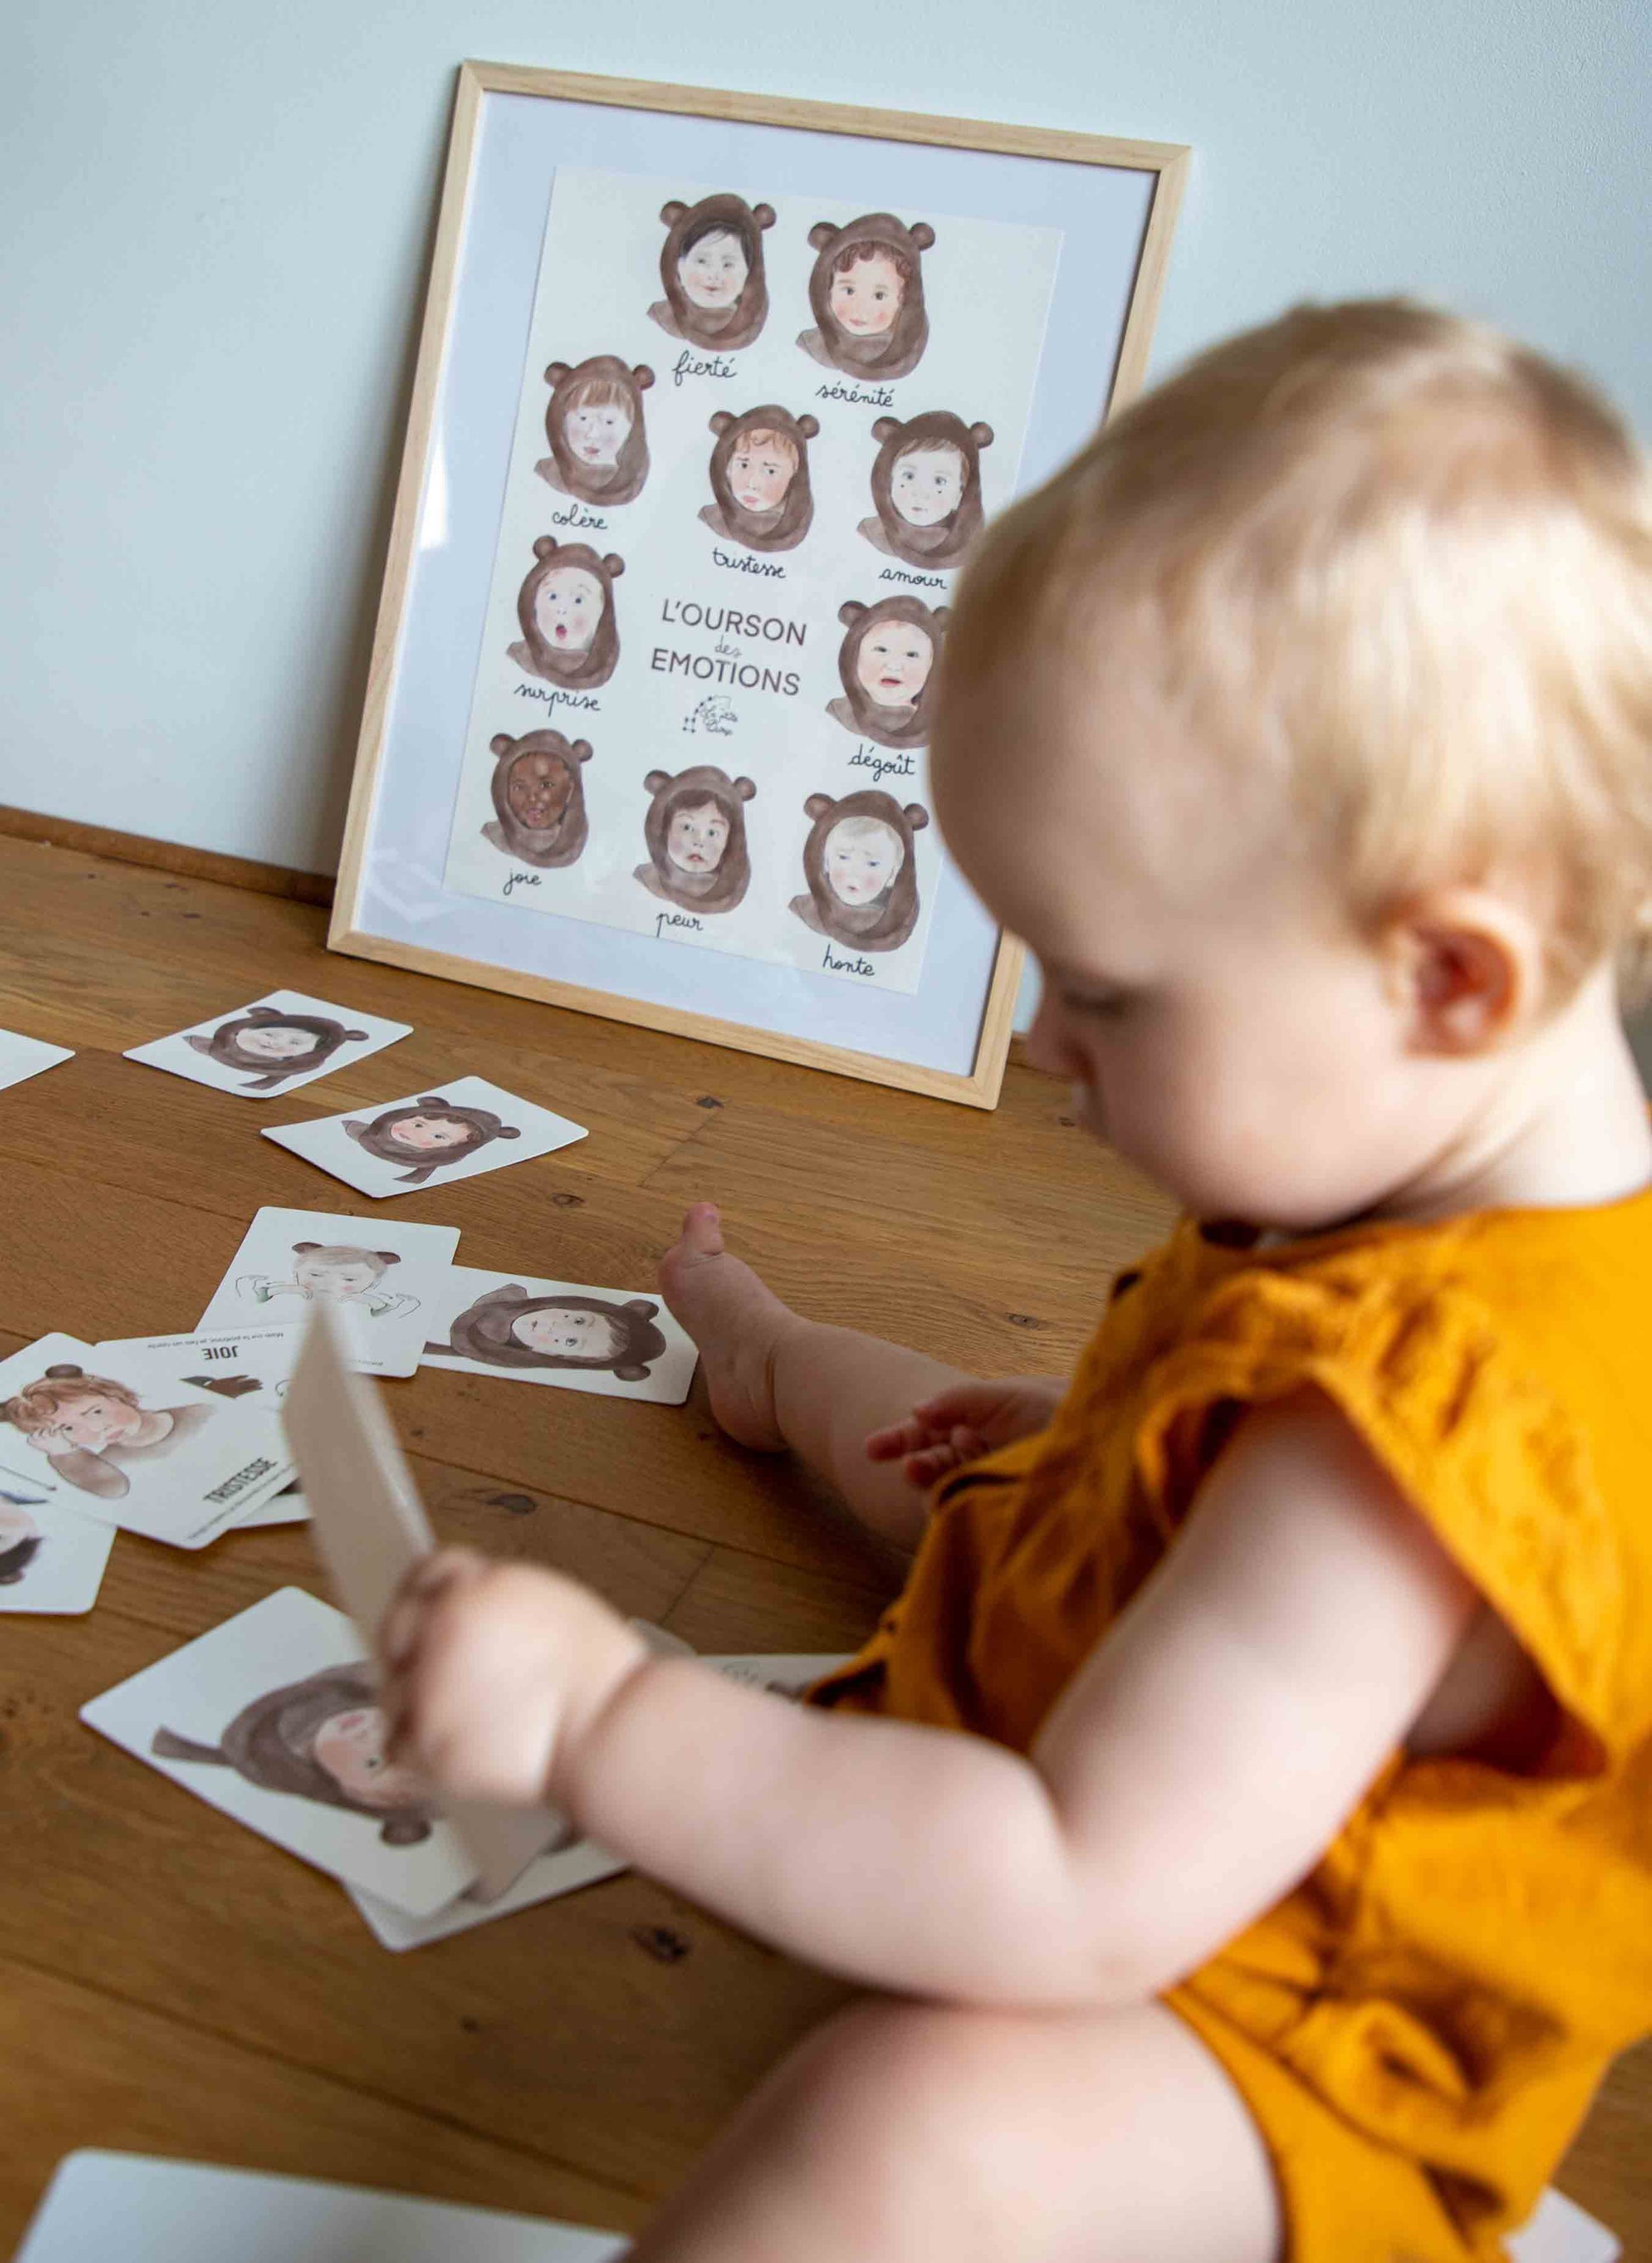 Bébé assis, jouant avec les cartes bébé signes l'ourson des émotions, devant l'affiche bébé signe l'ourson des émotions